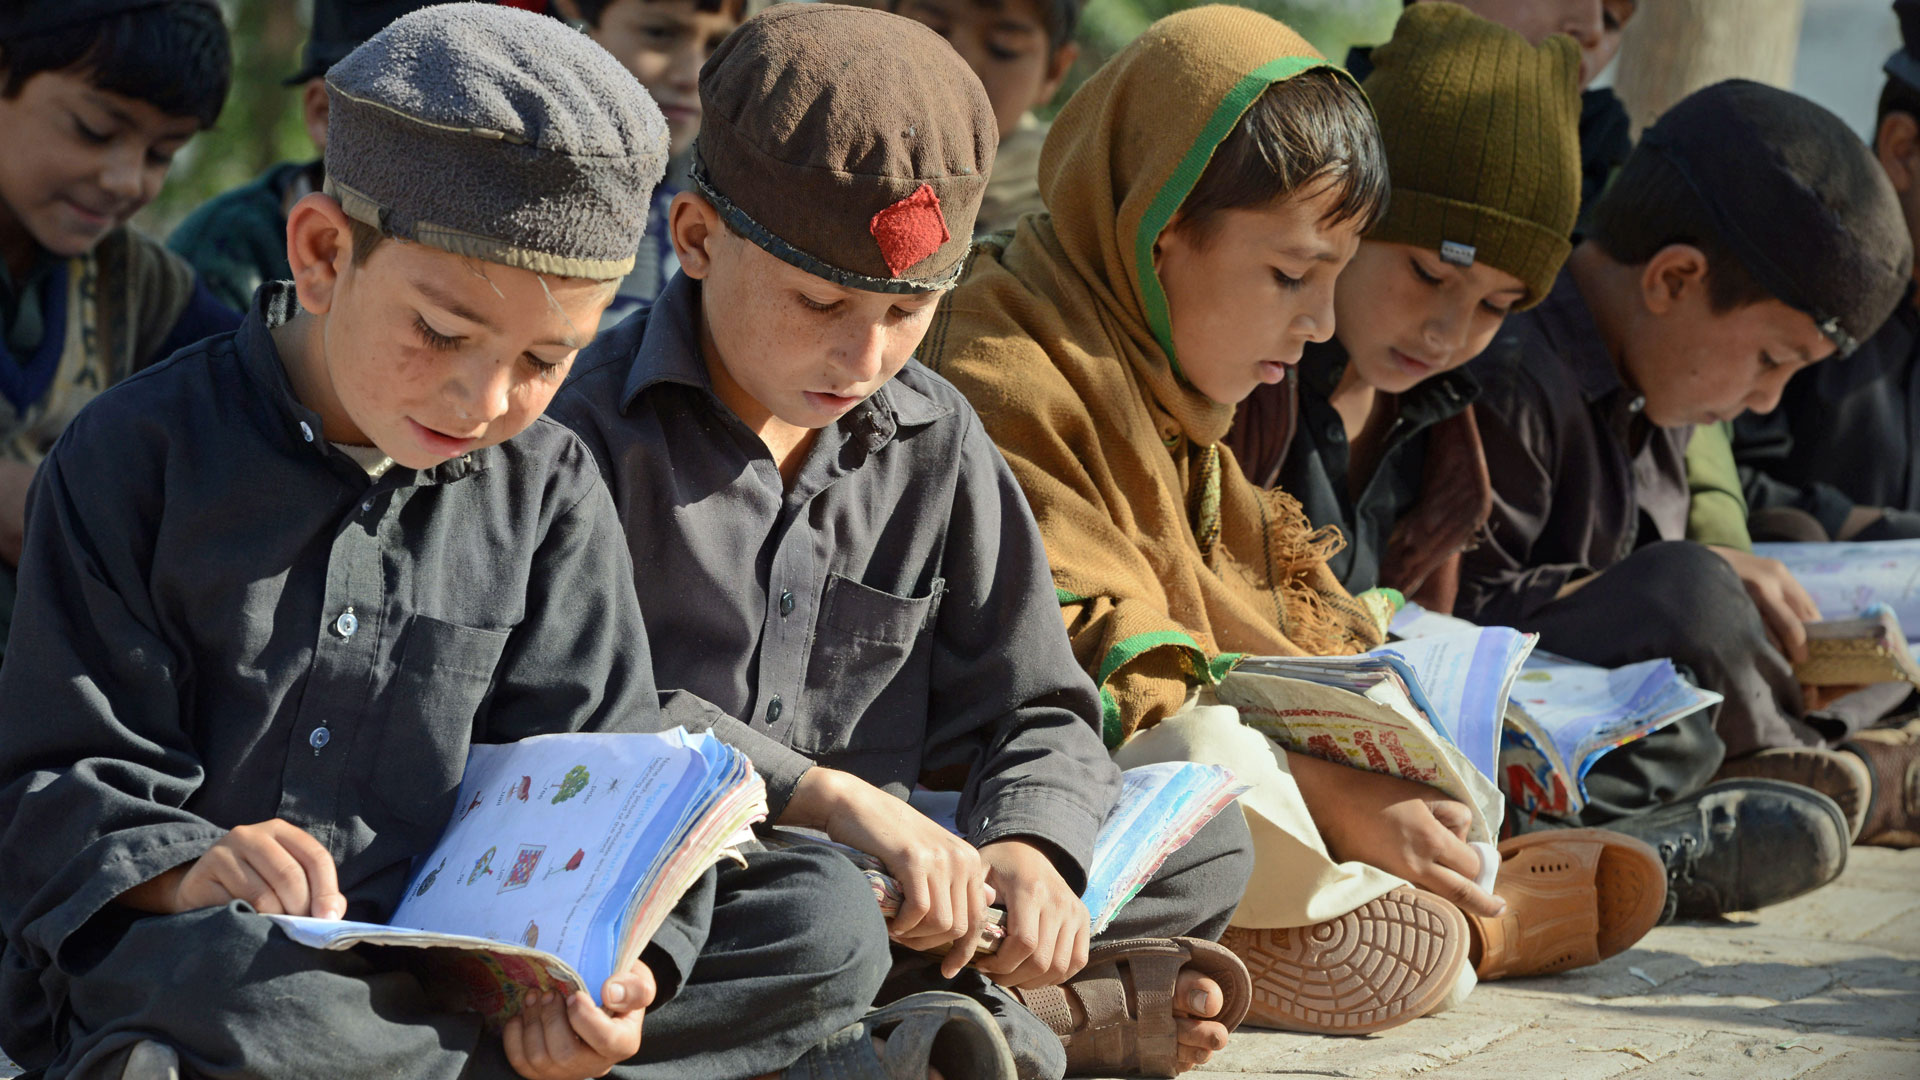 Grundschulbildung für Kinder in den sogenannten Stammesgebieten in Pakistan